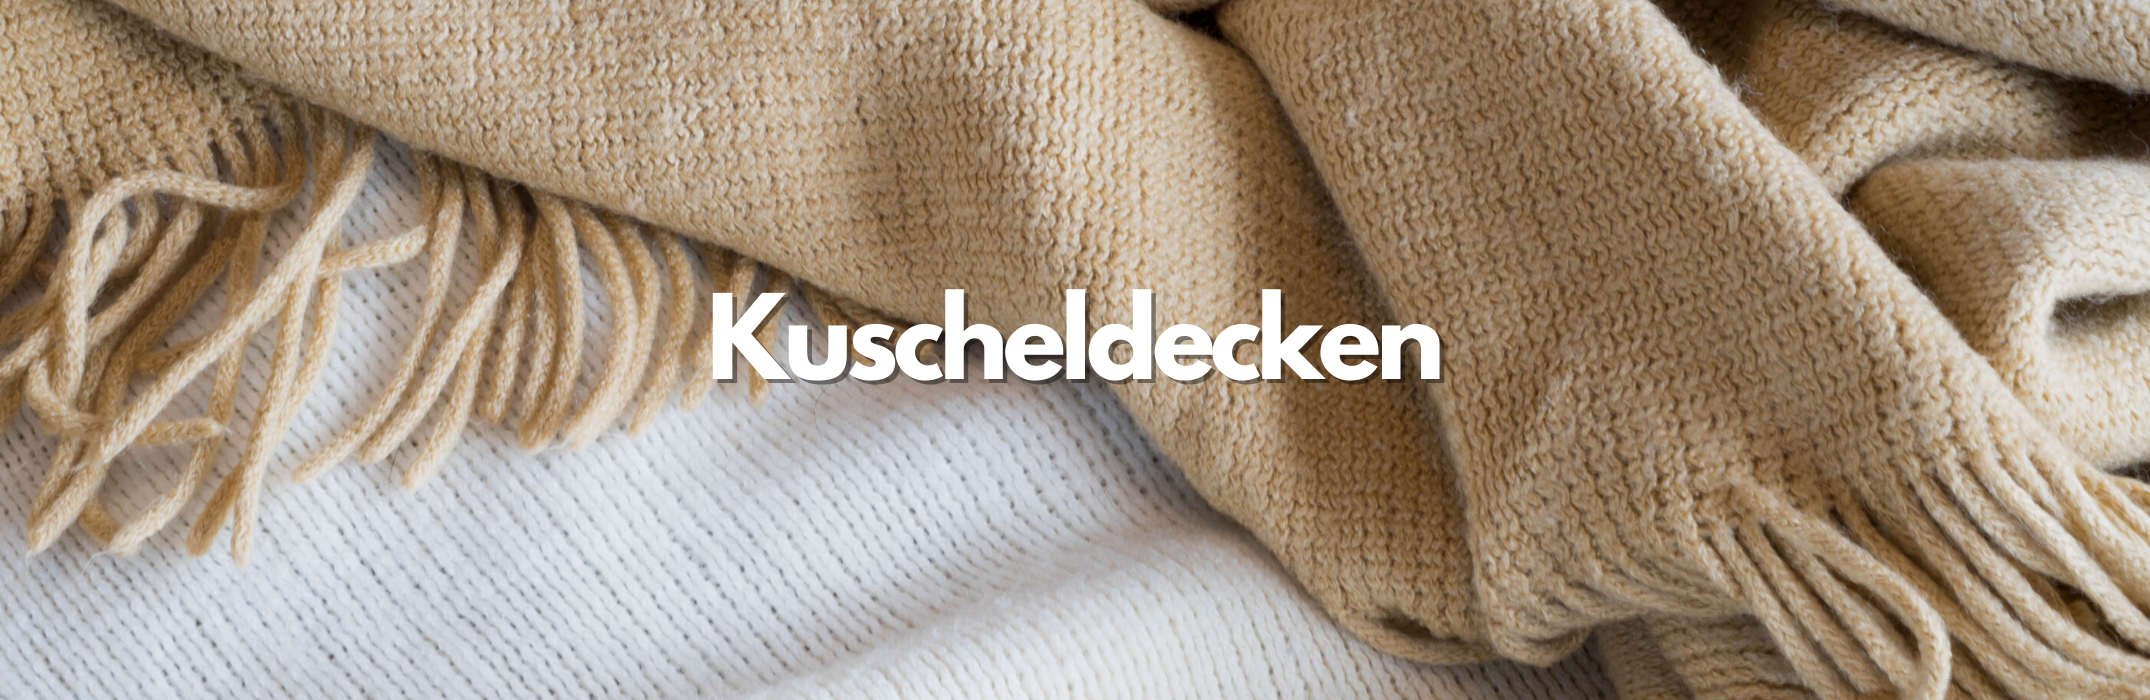 Kuscheldecken - WohnDirect.com – WohnDirect.com - Heimtextilien und  Wohnaccessoires